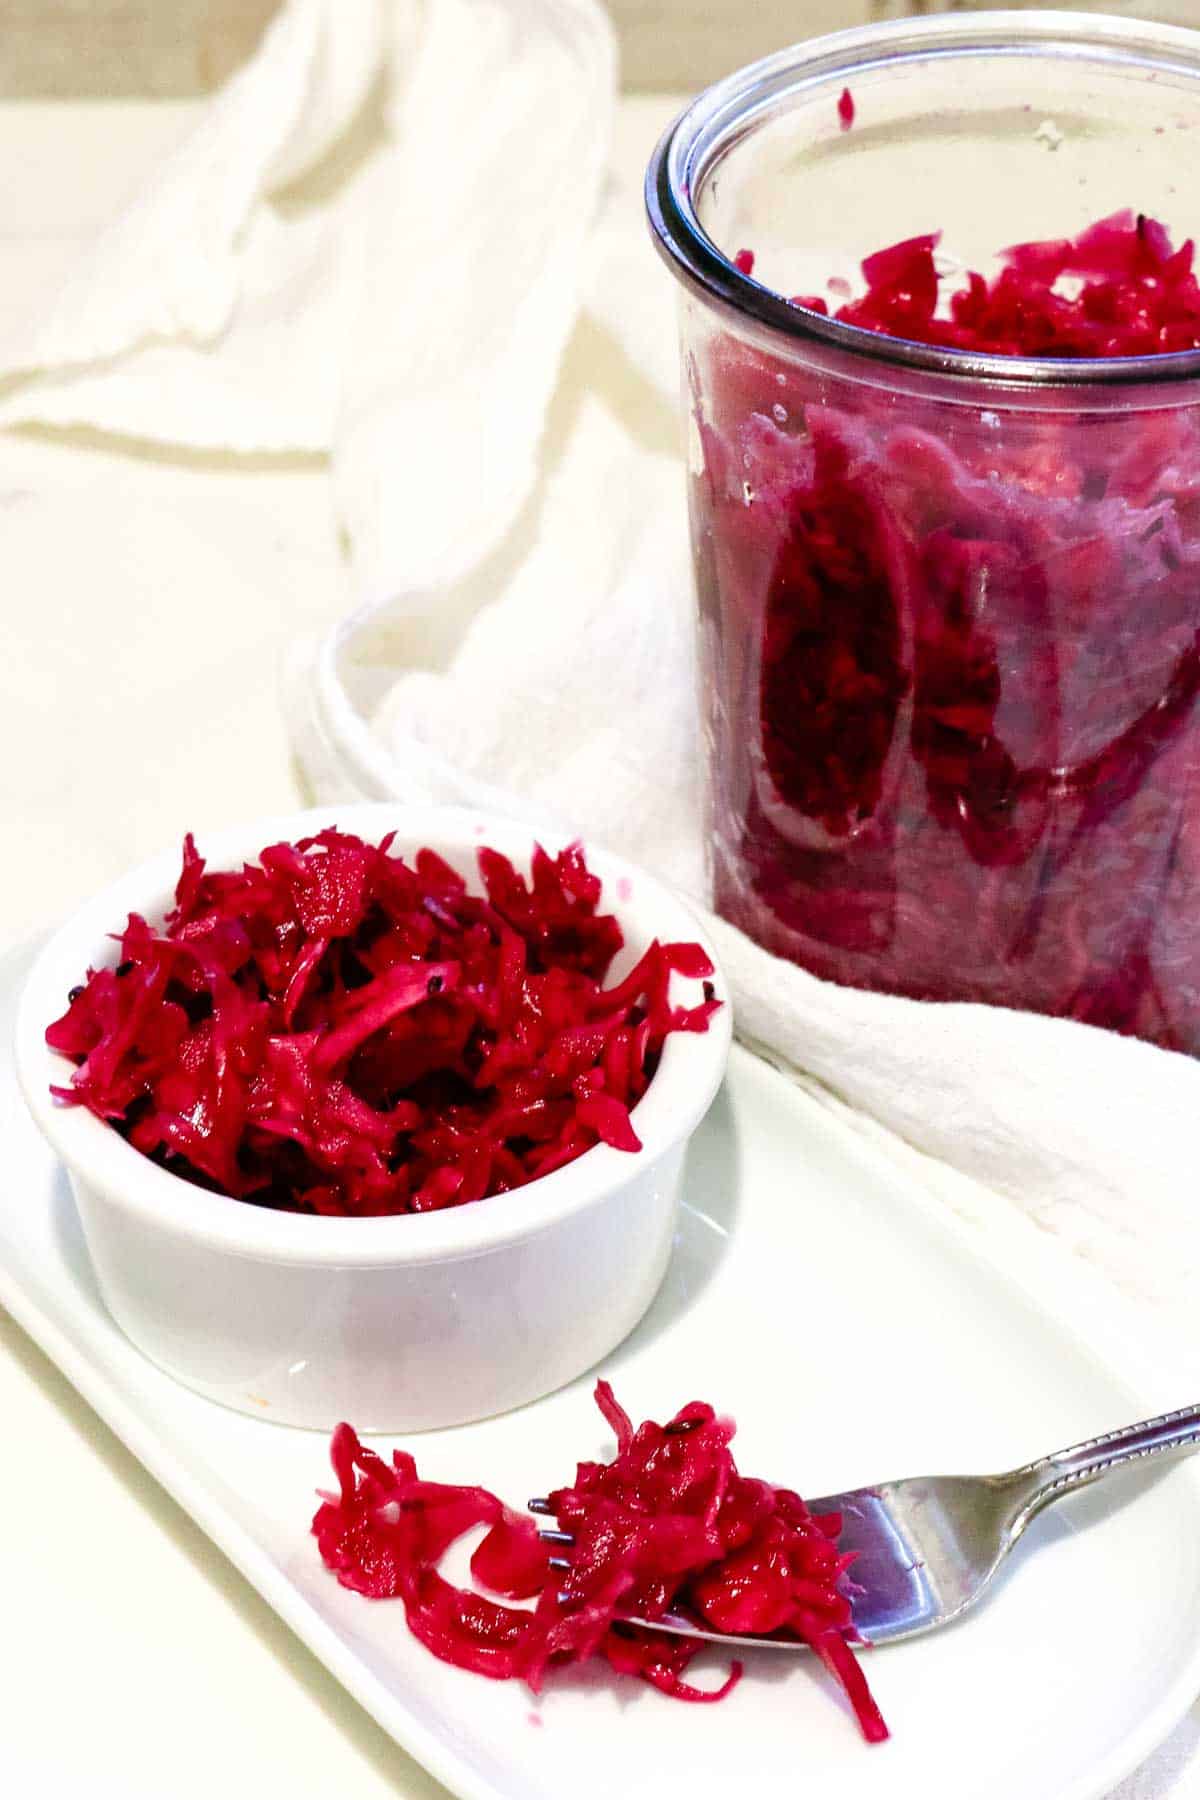 Fermented Red Cabbage sauerkraut recipe in a small ramekin and jar.